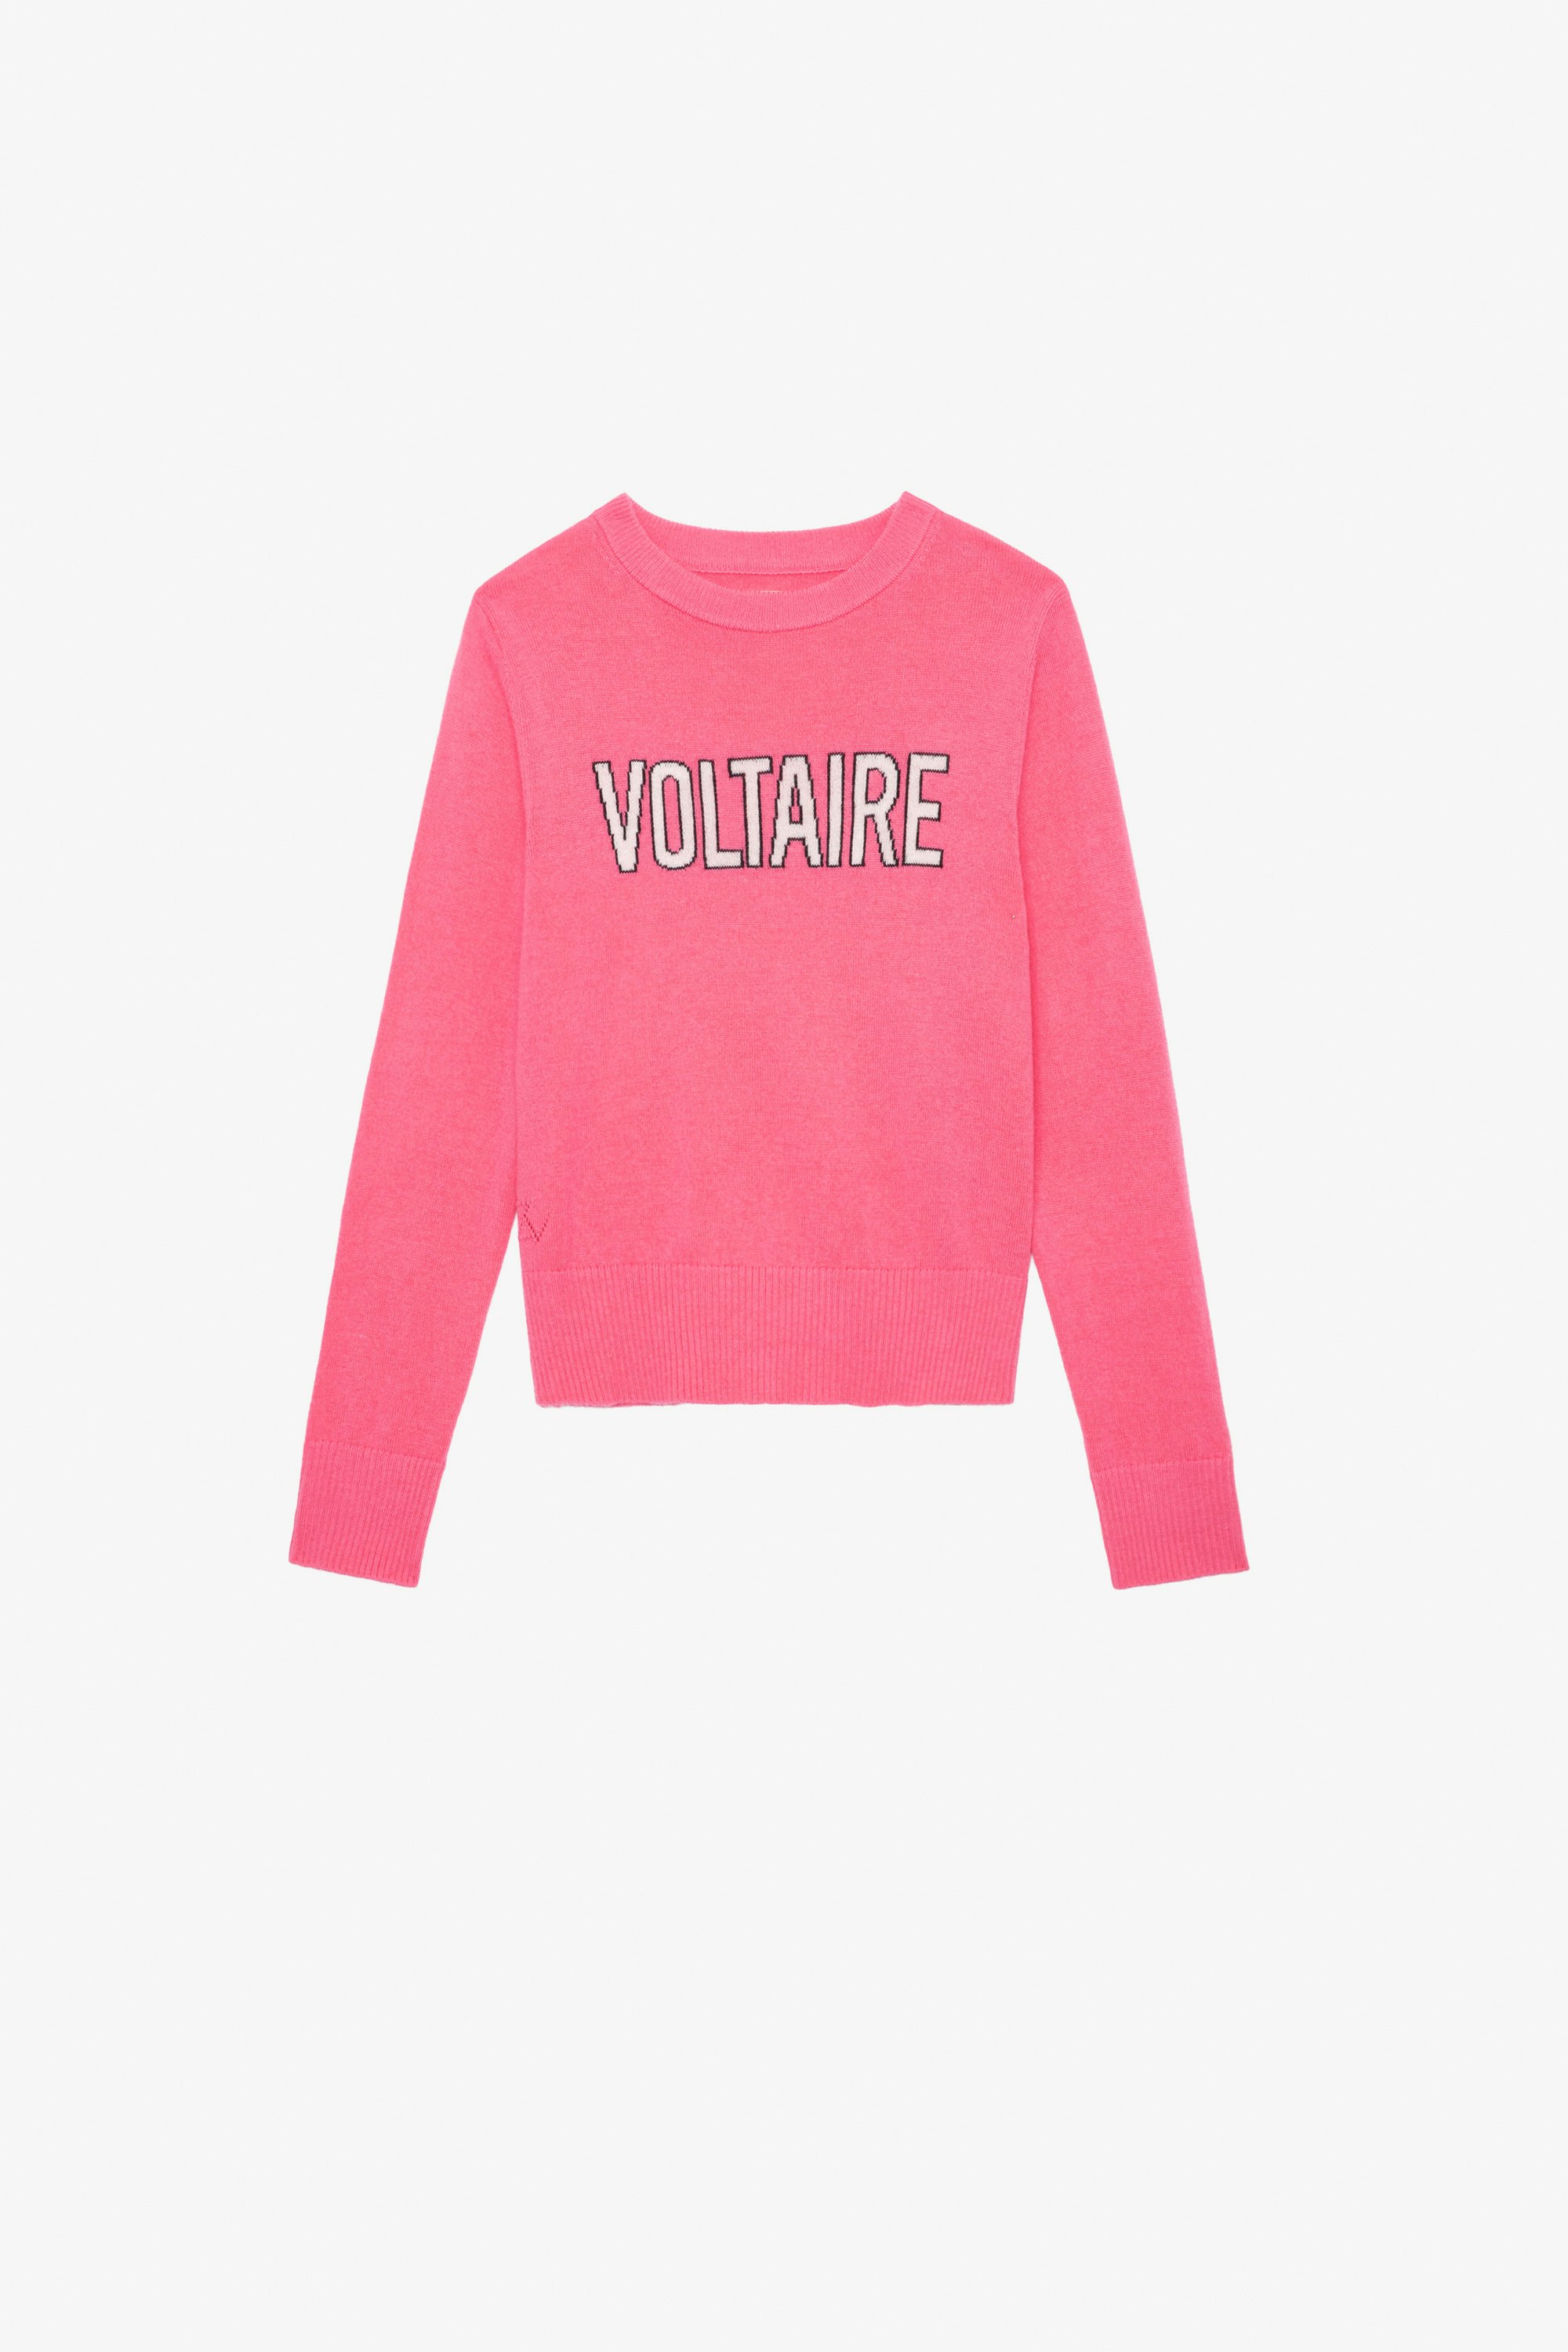 Drum Girls’ Jumper Girls’ pink knit jumper with “Voltaire” slogan.